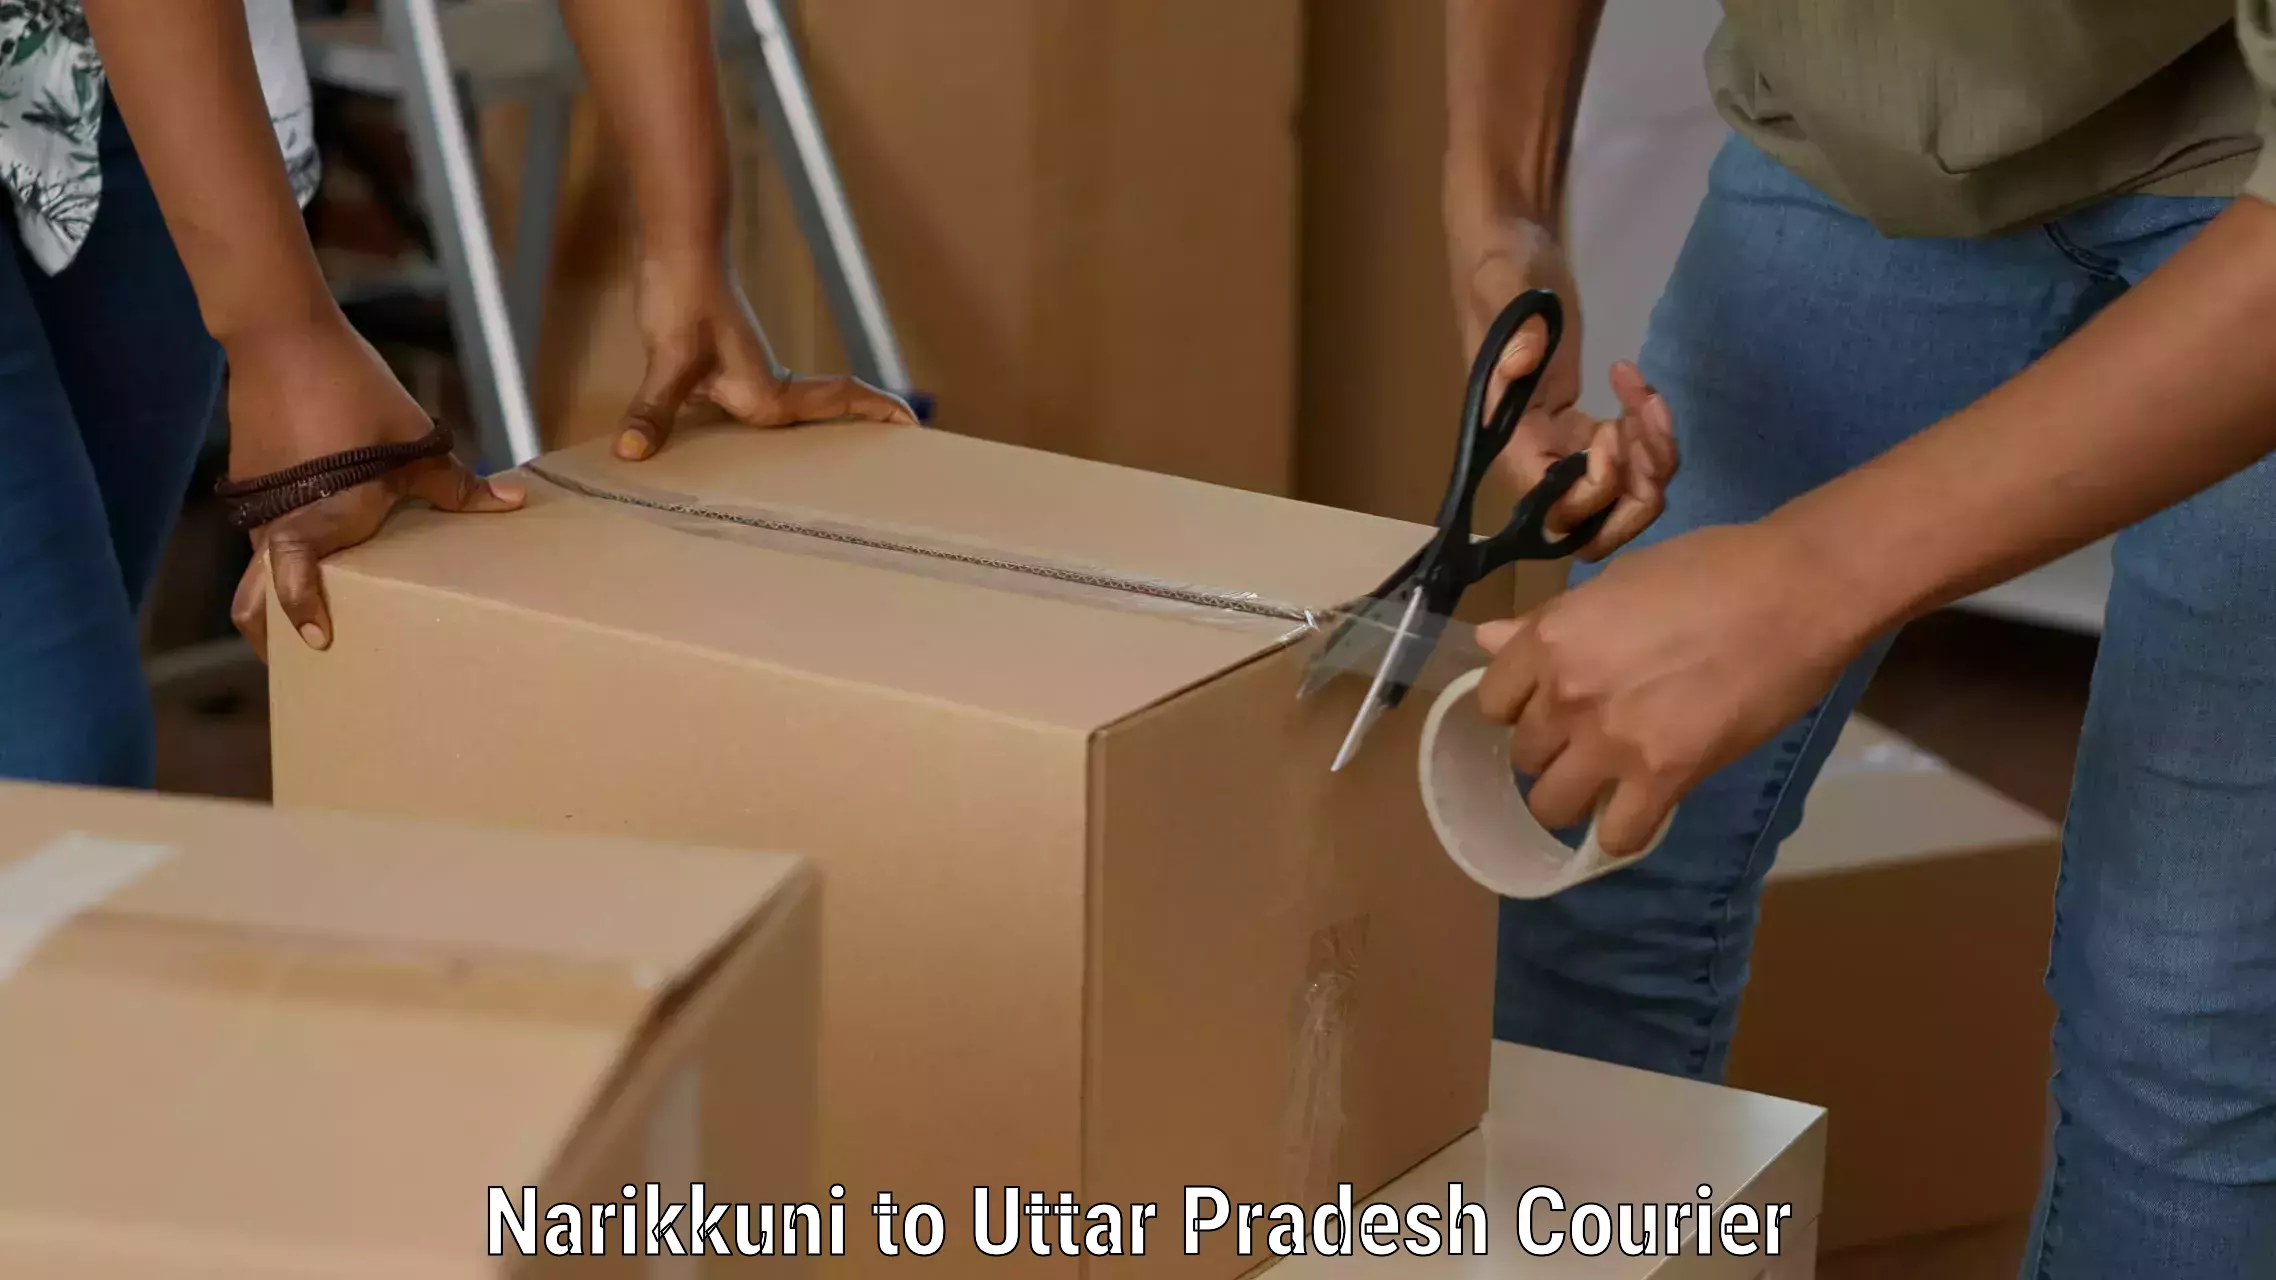 Full-service courier options Narikkuni to Thakurdwara